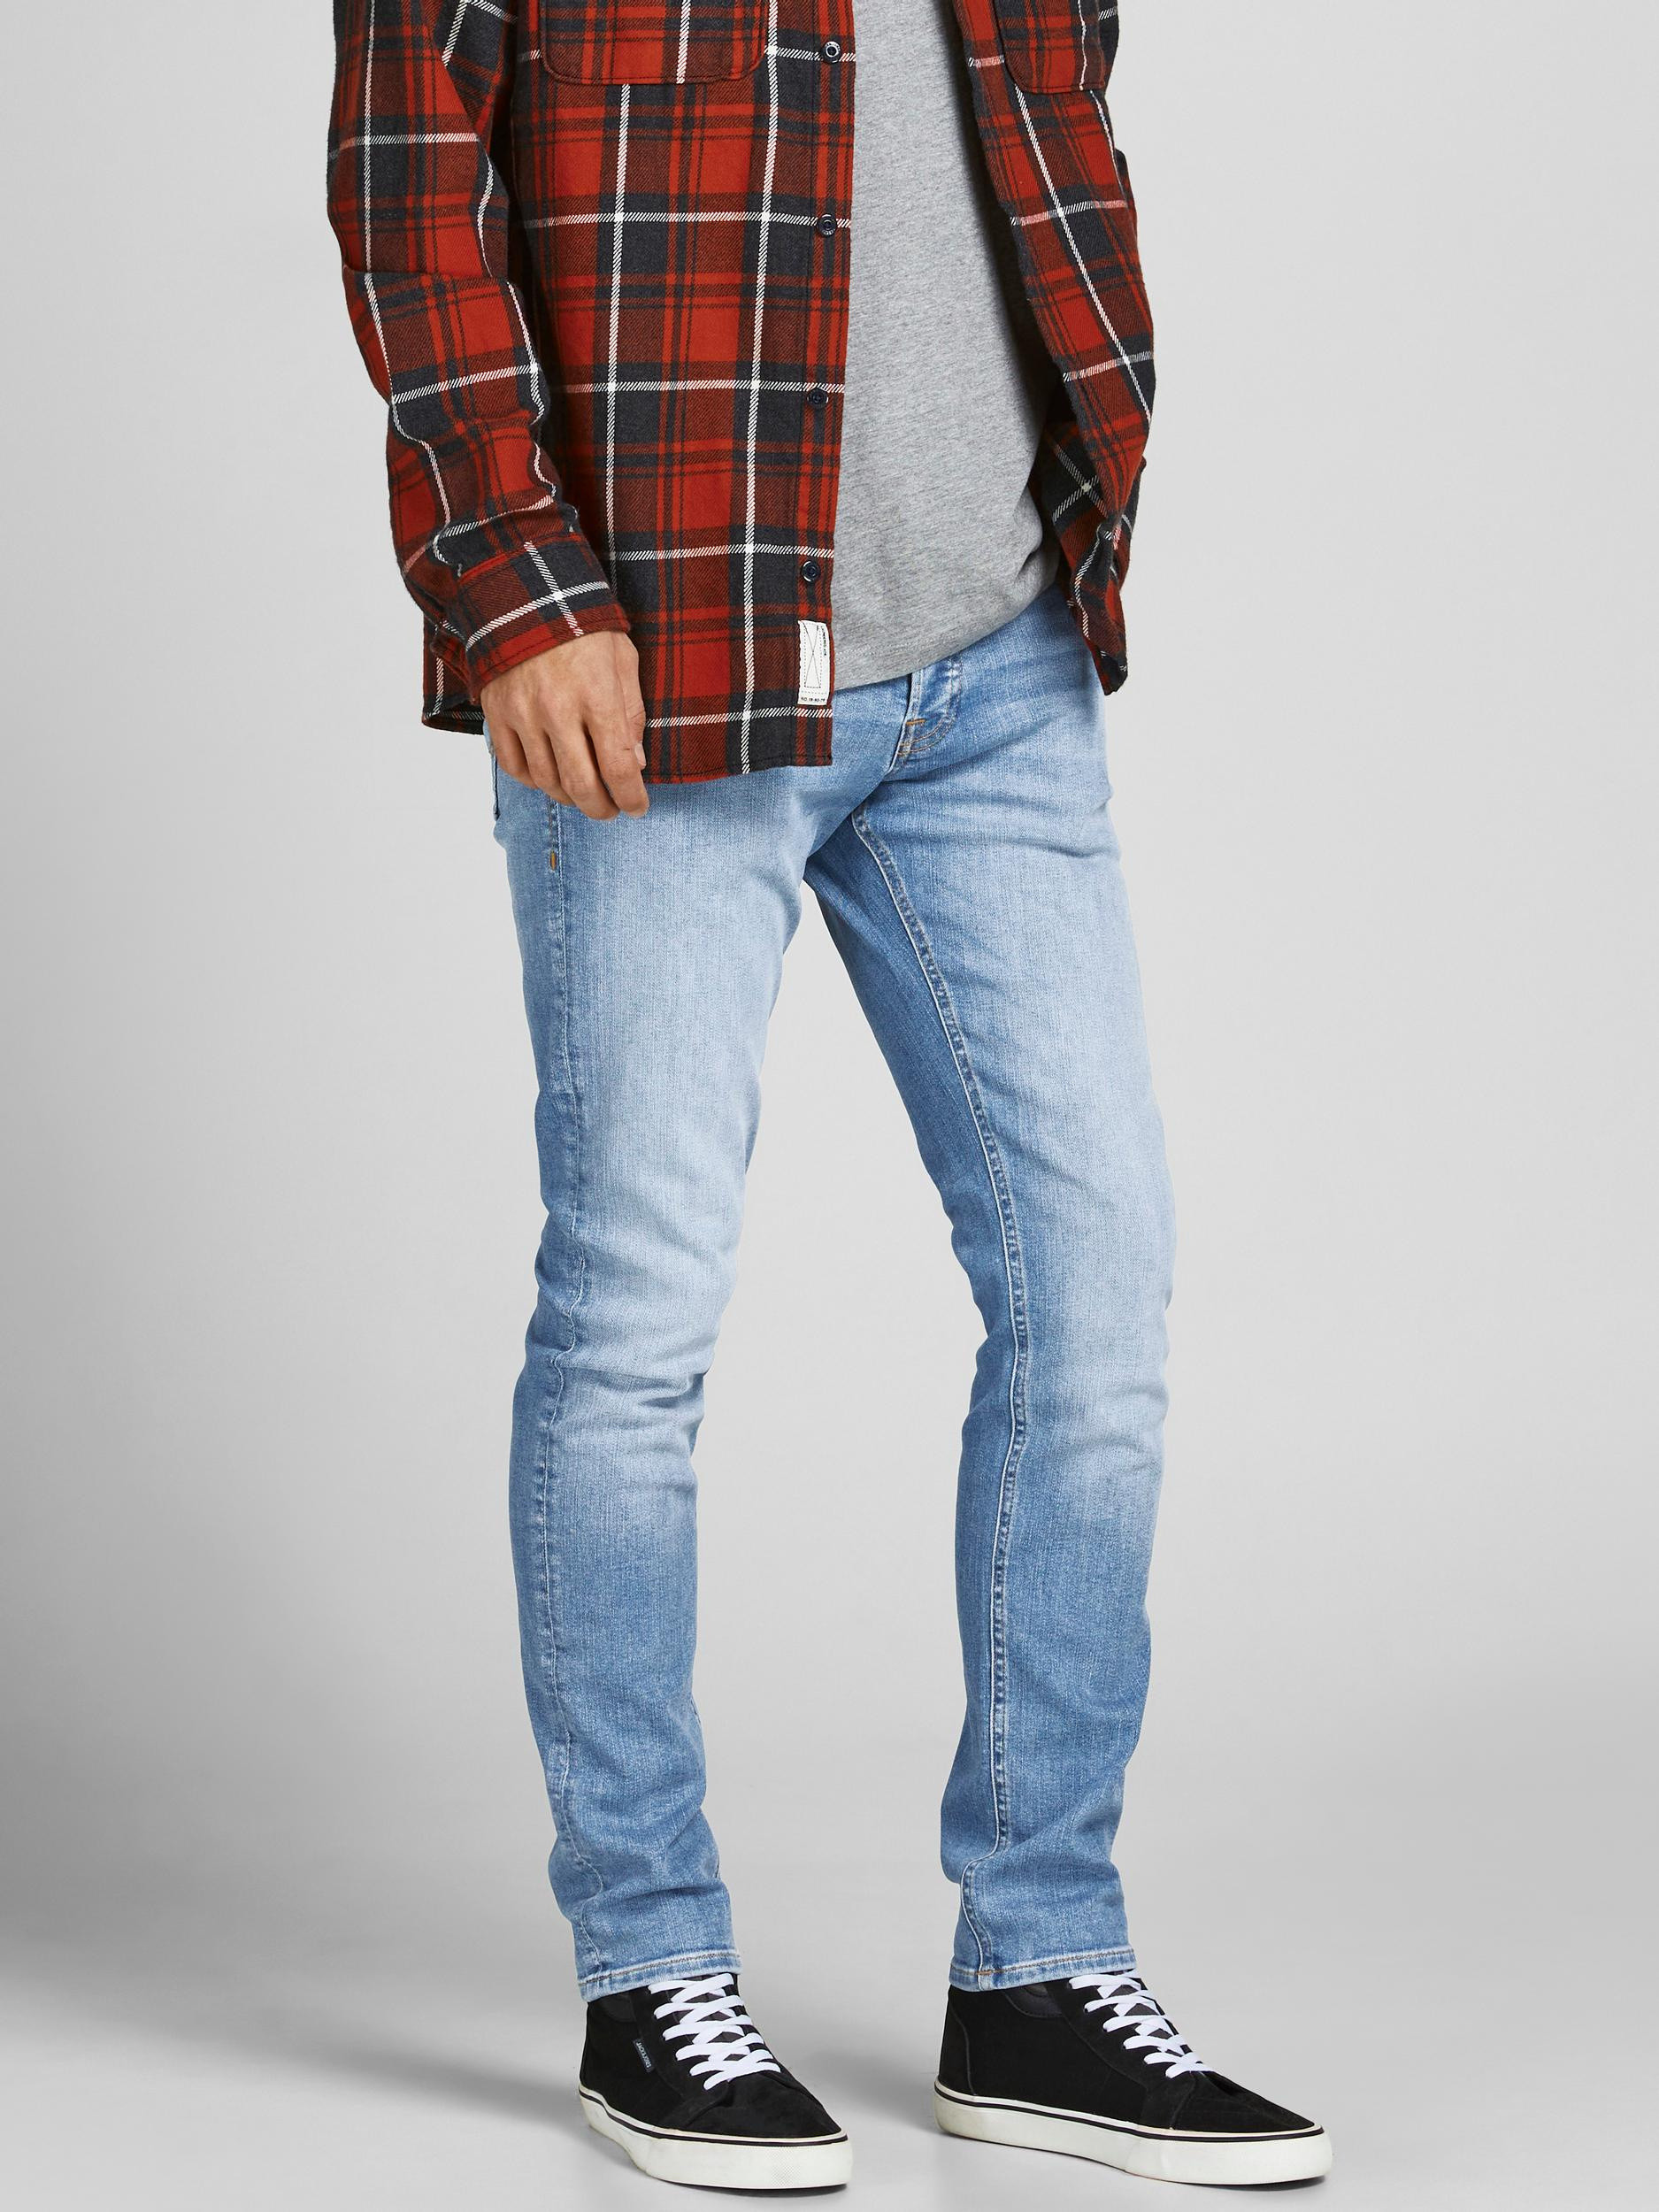 Jack & Jones - Jeans cinque tasche slim fit, Denim, large image number 4